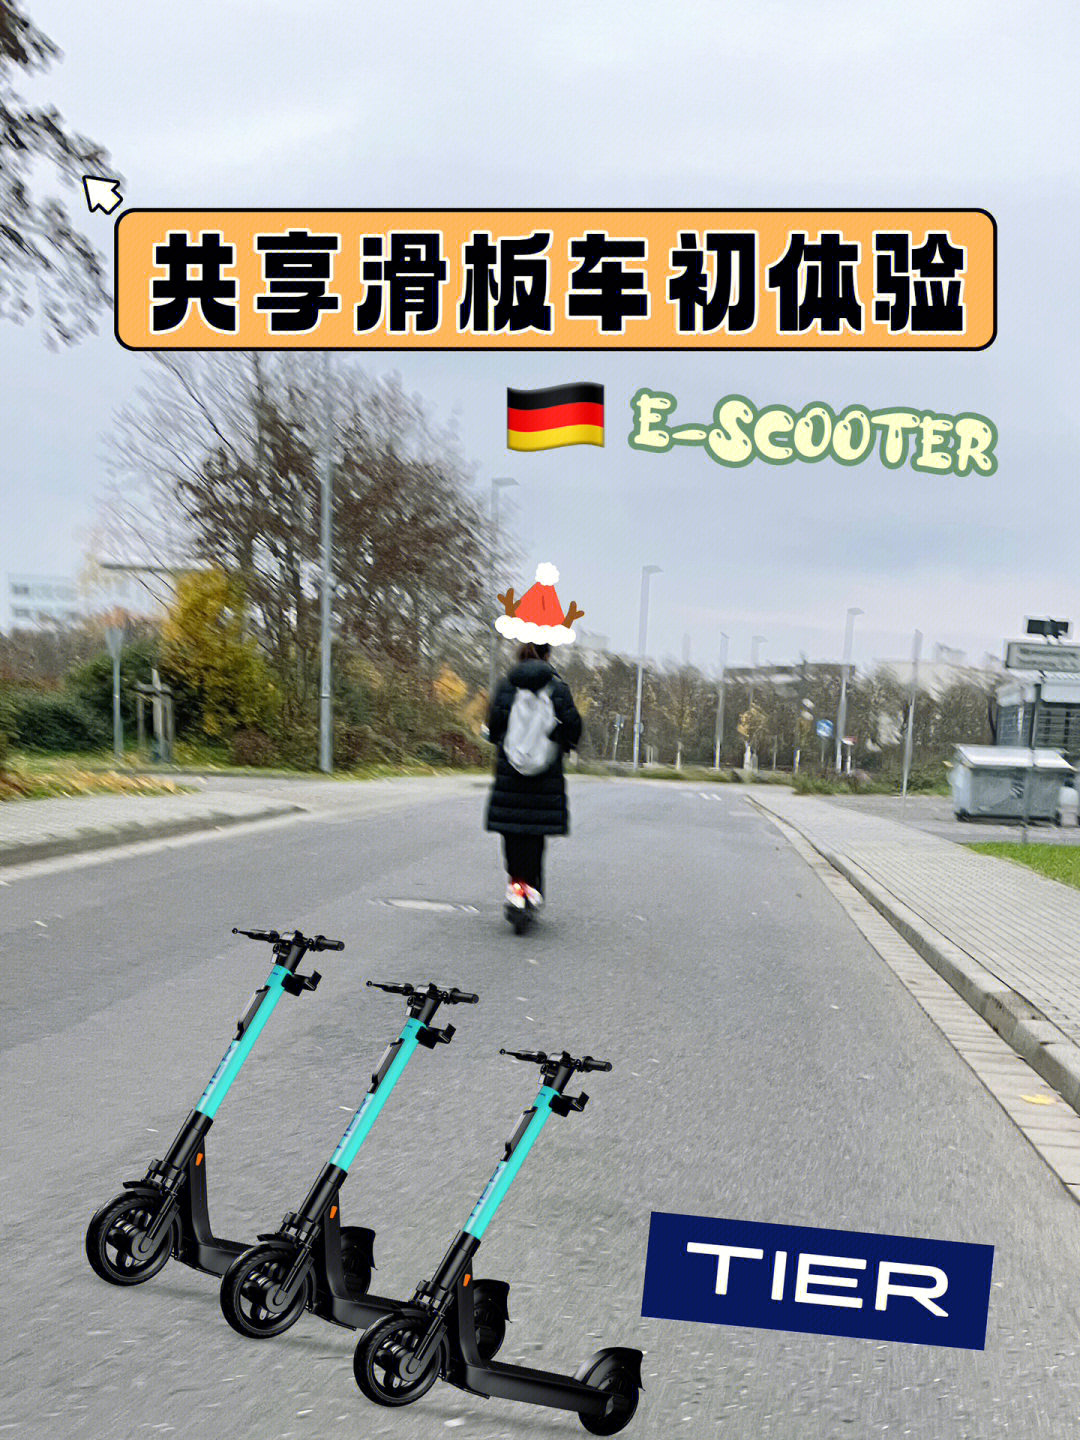 德国乐scooter图片